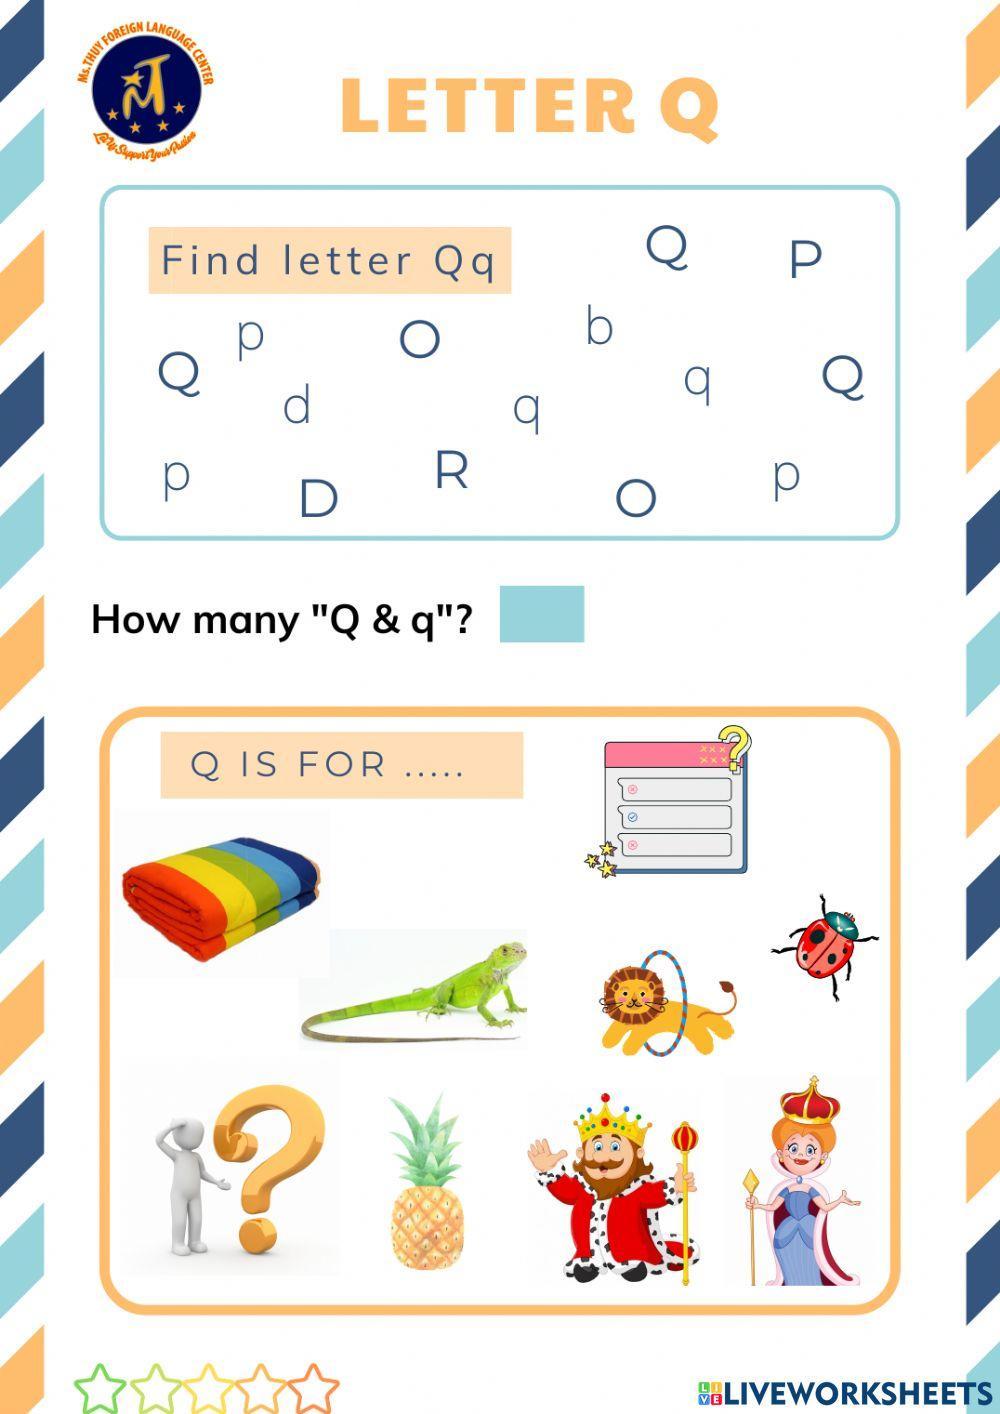 Find Letter Qq